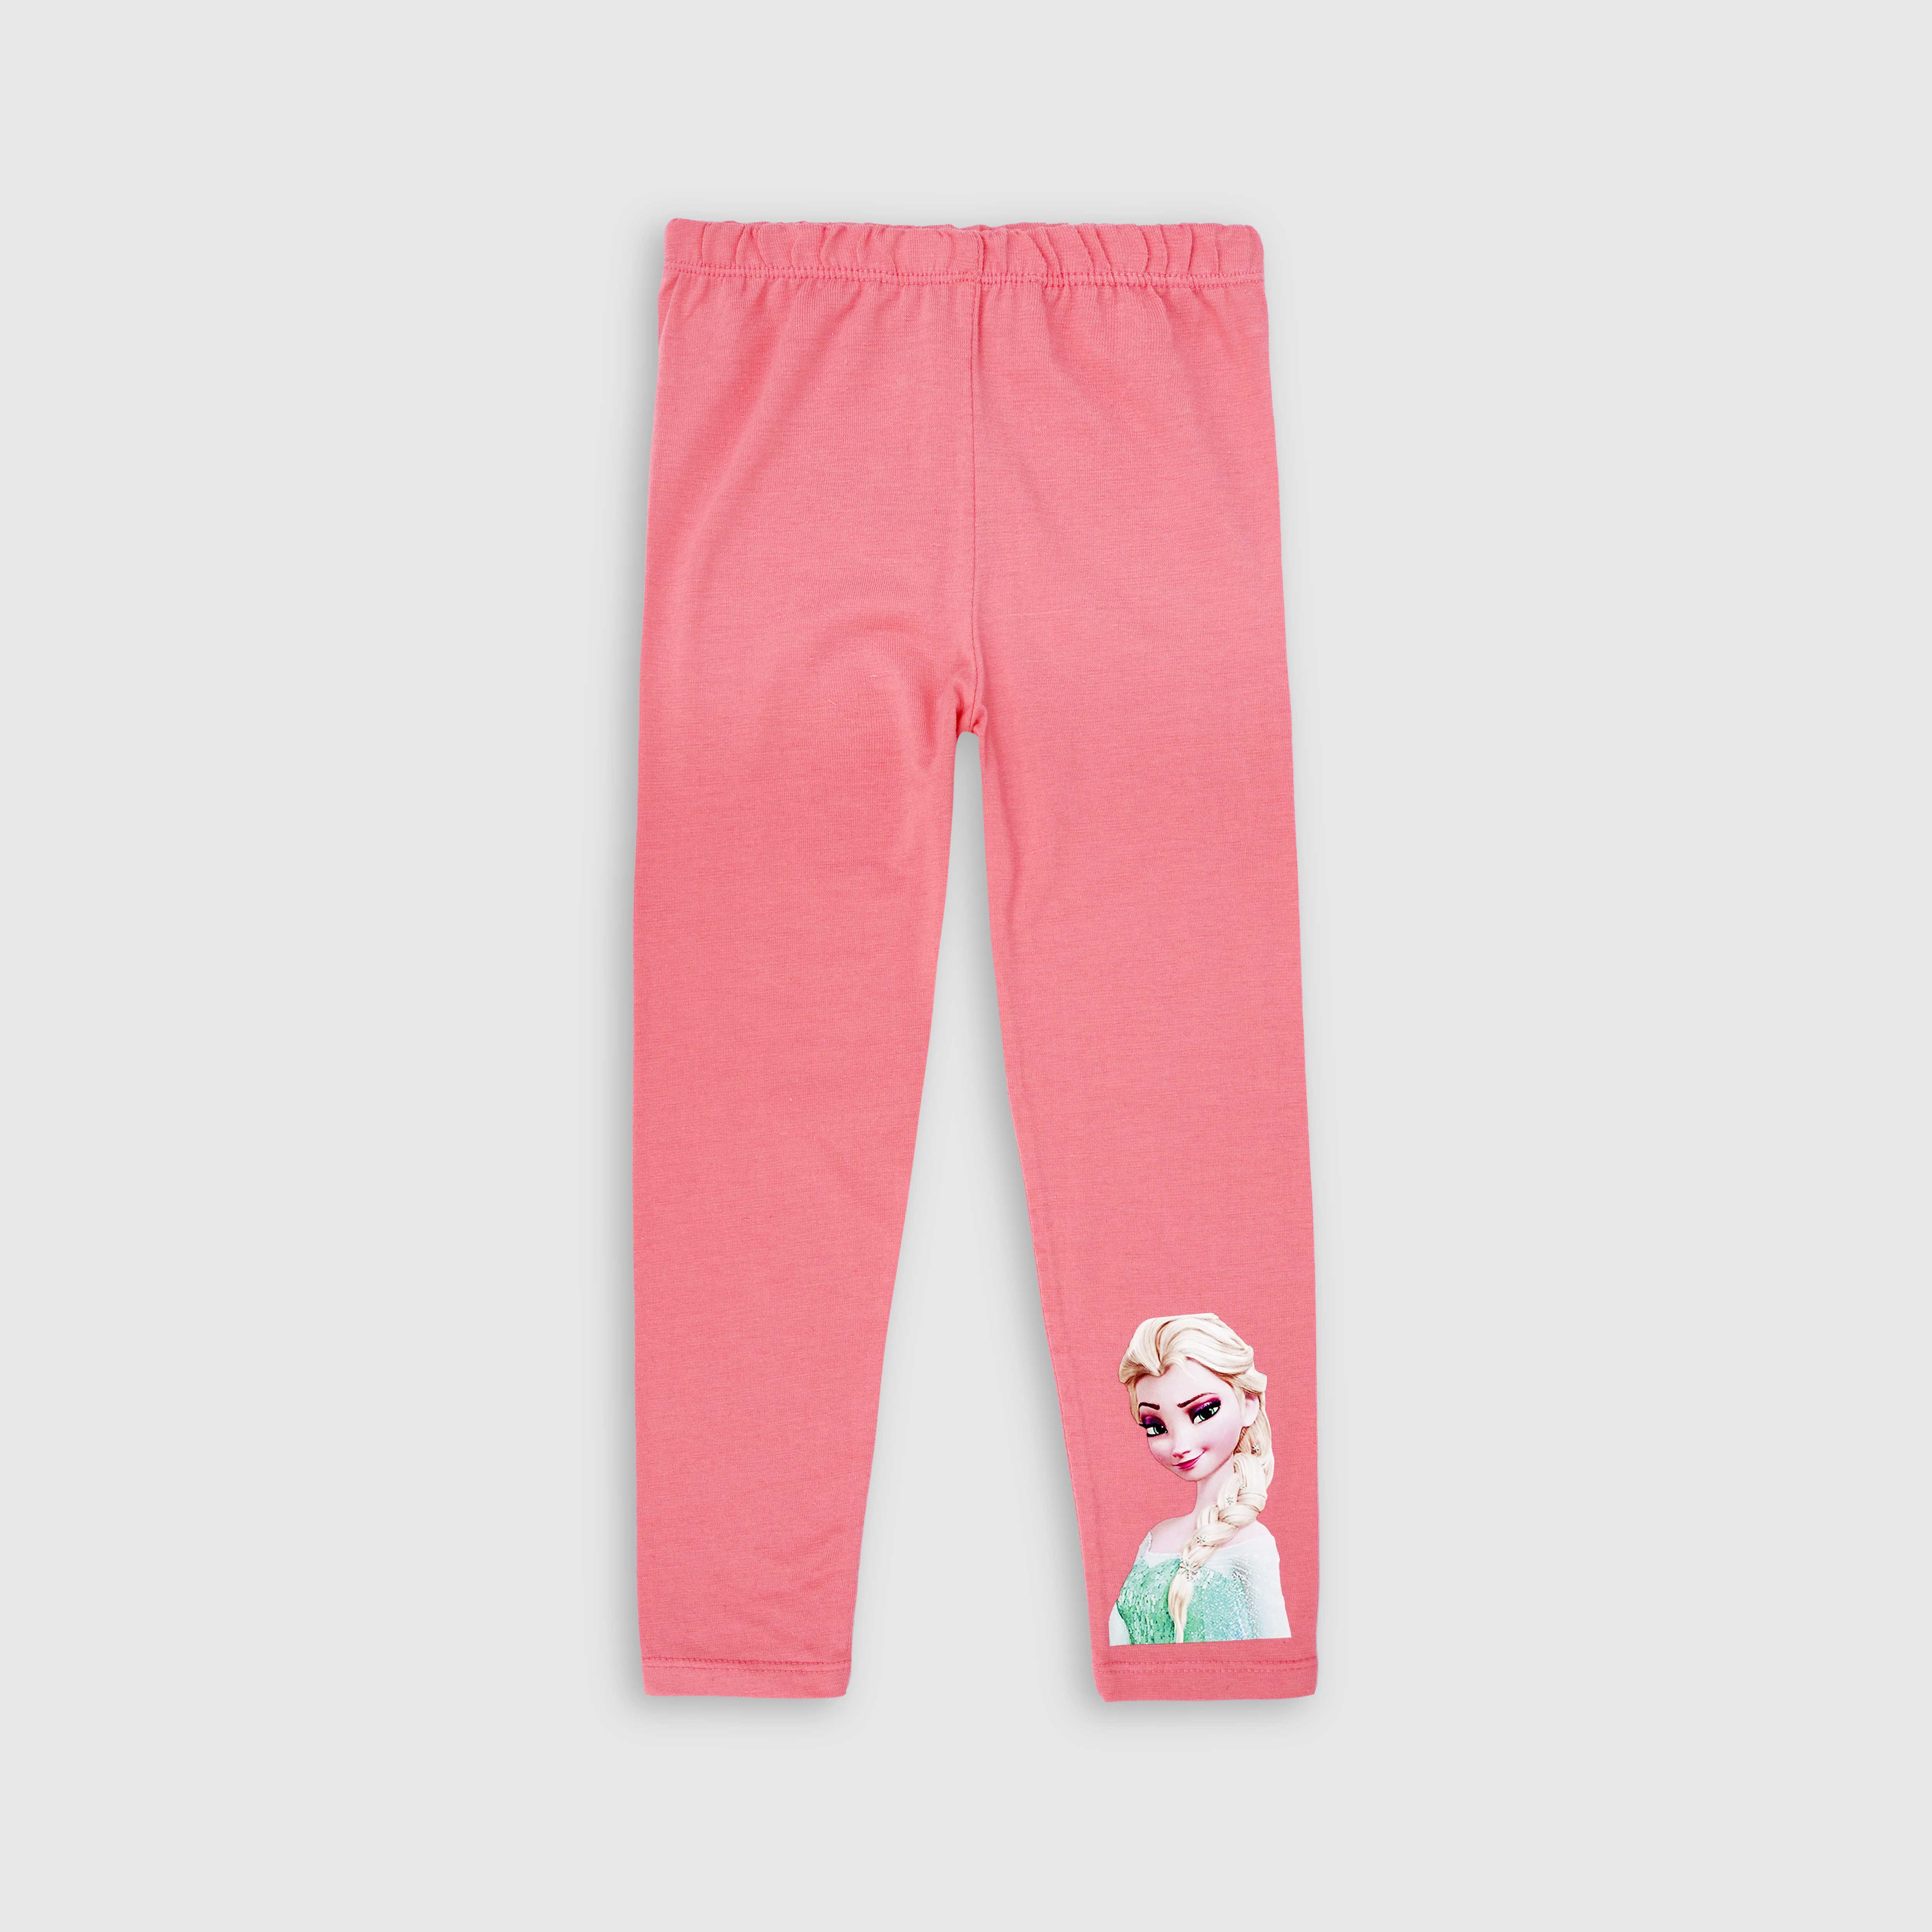 Girls Soft Cotton Printed Pink Leggings